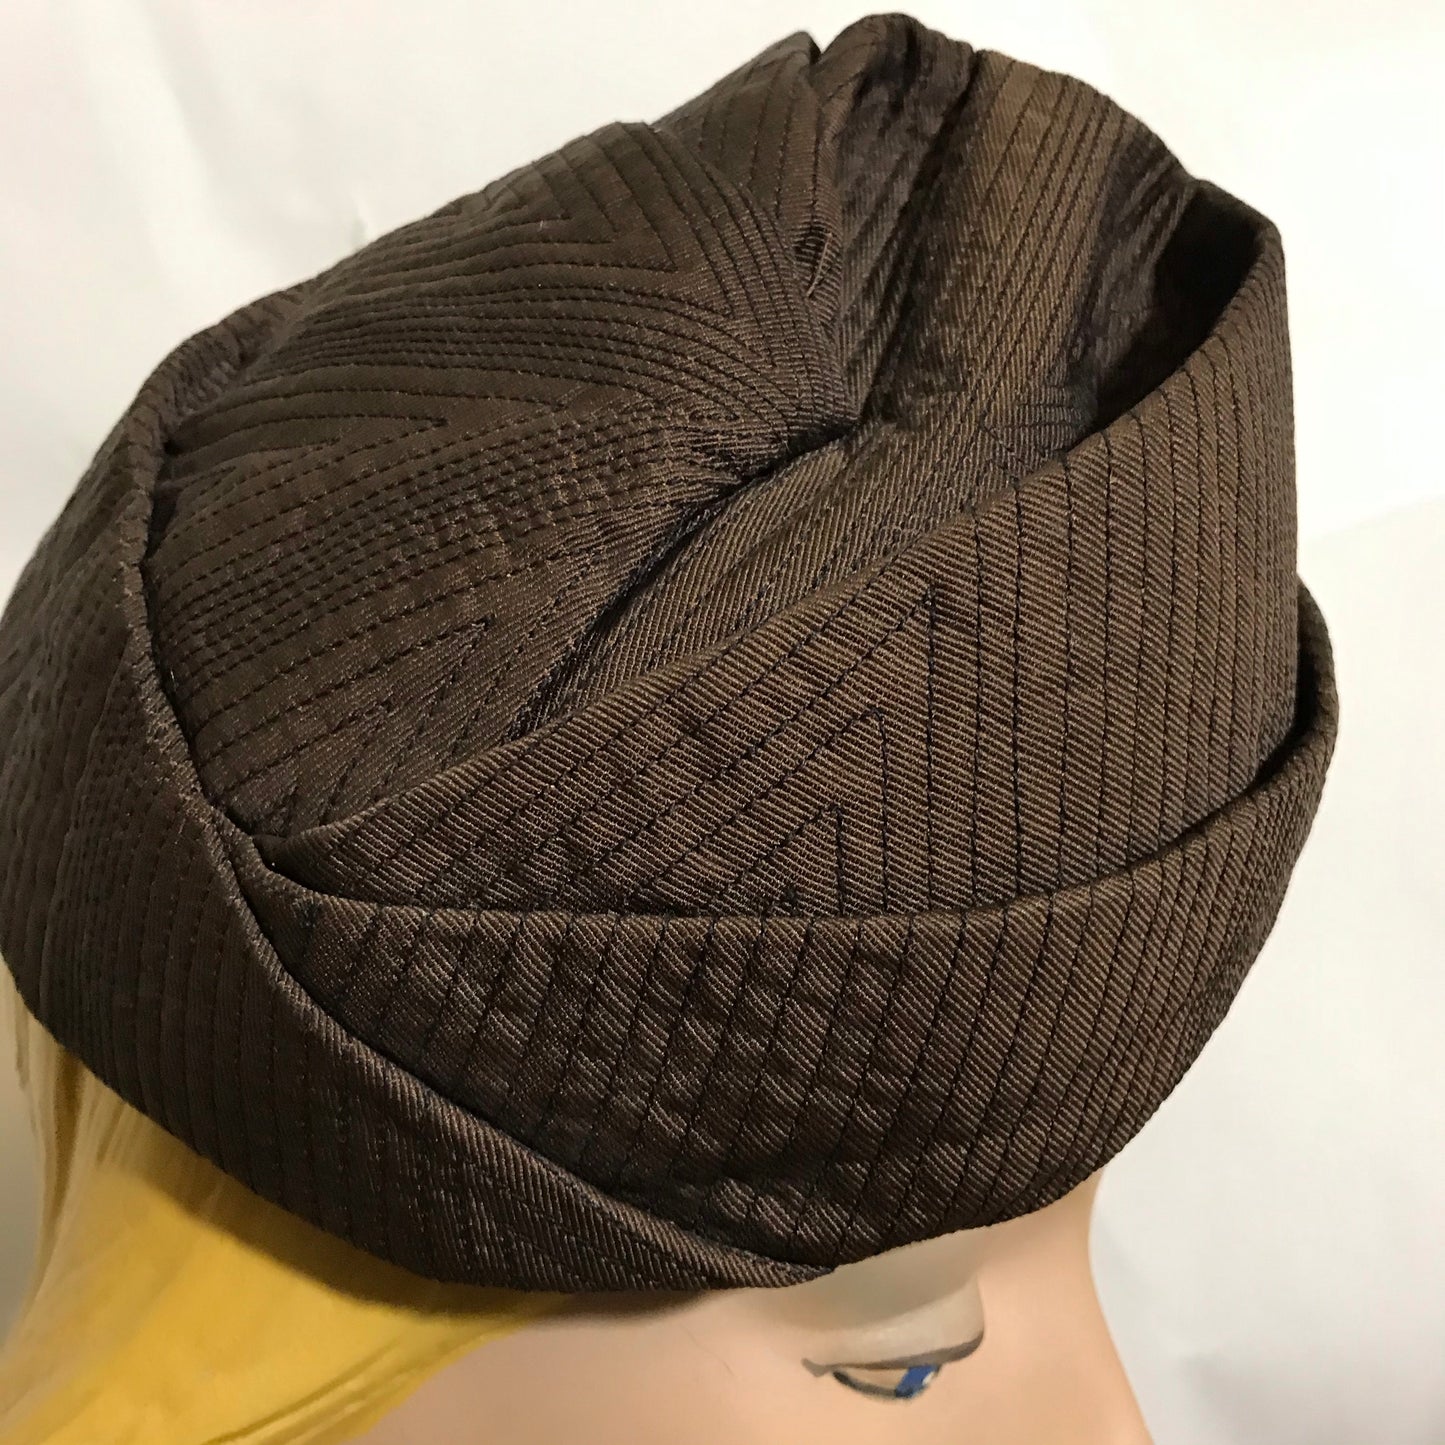 Cocoa Silk Topstiched Origami Folded Hat circa 1960s